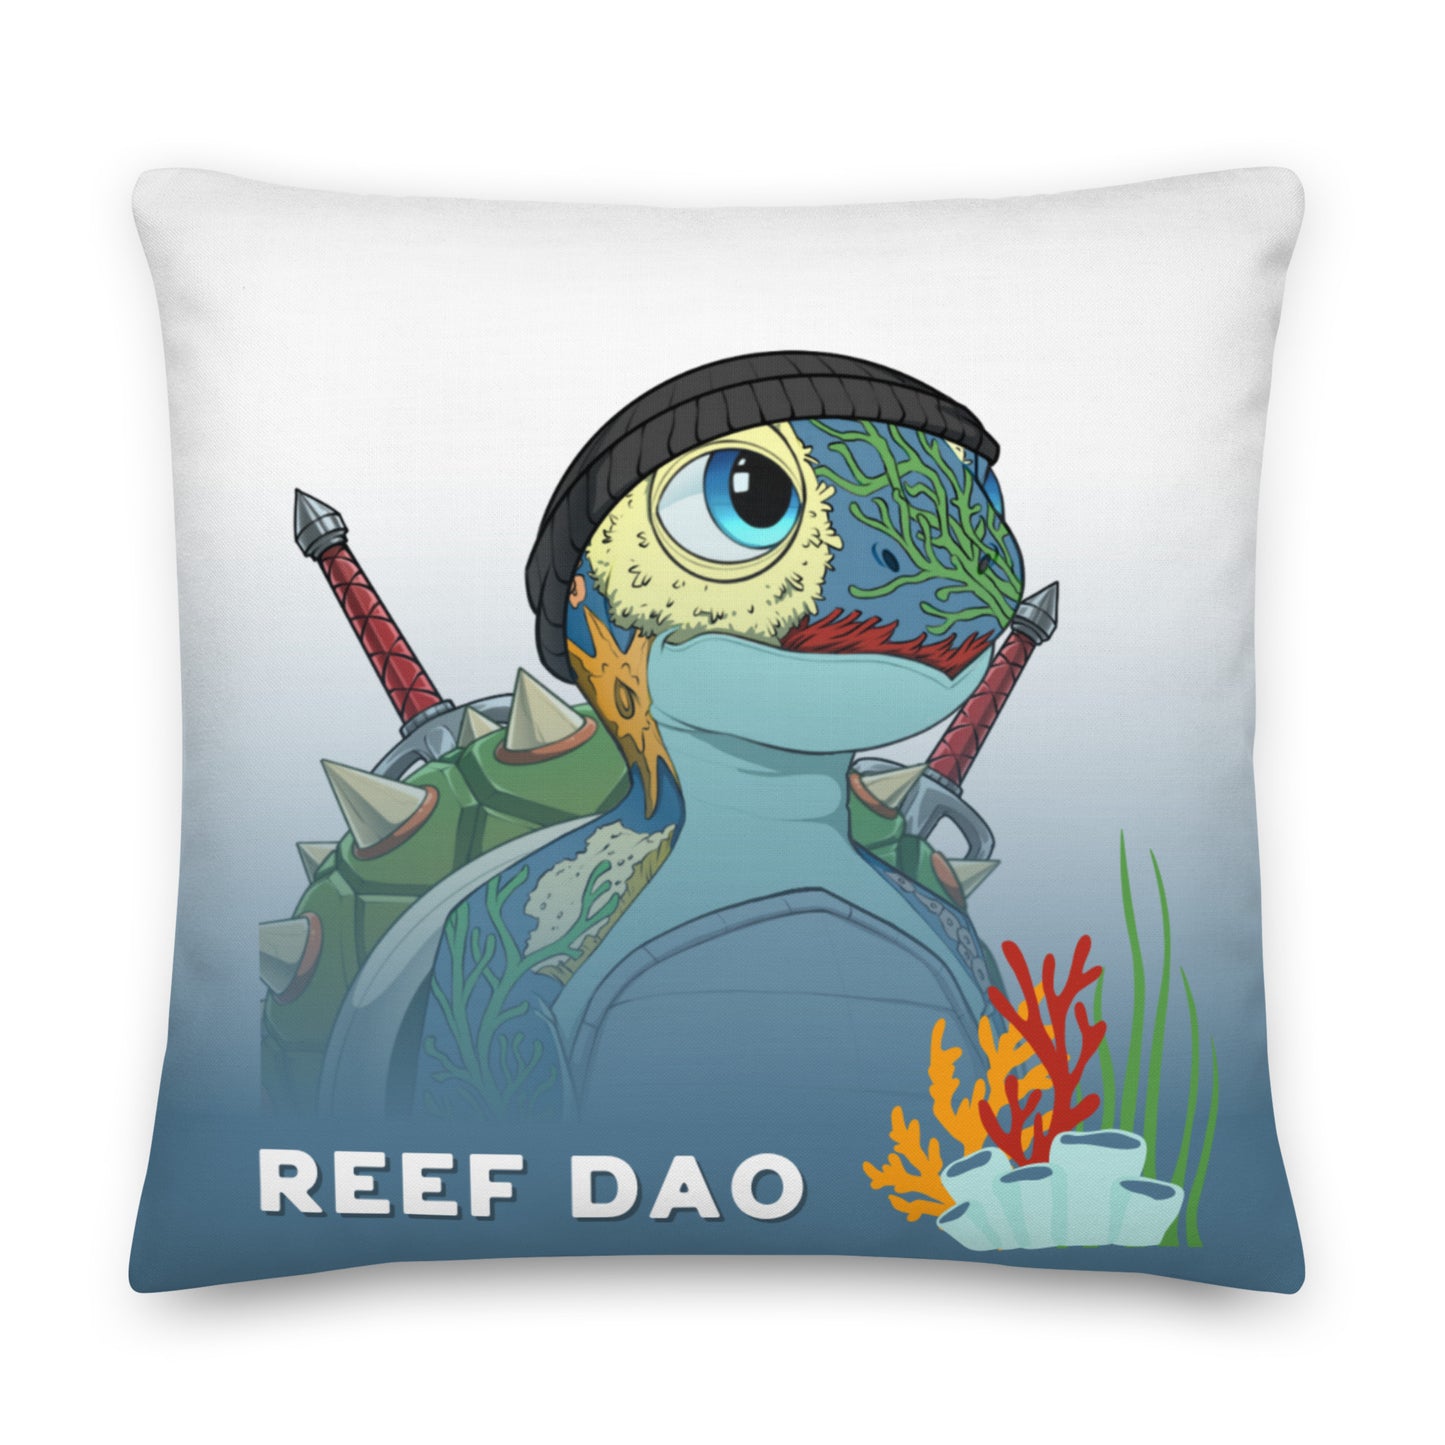 Reef Dao